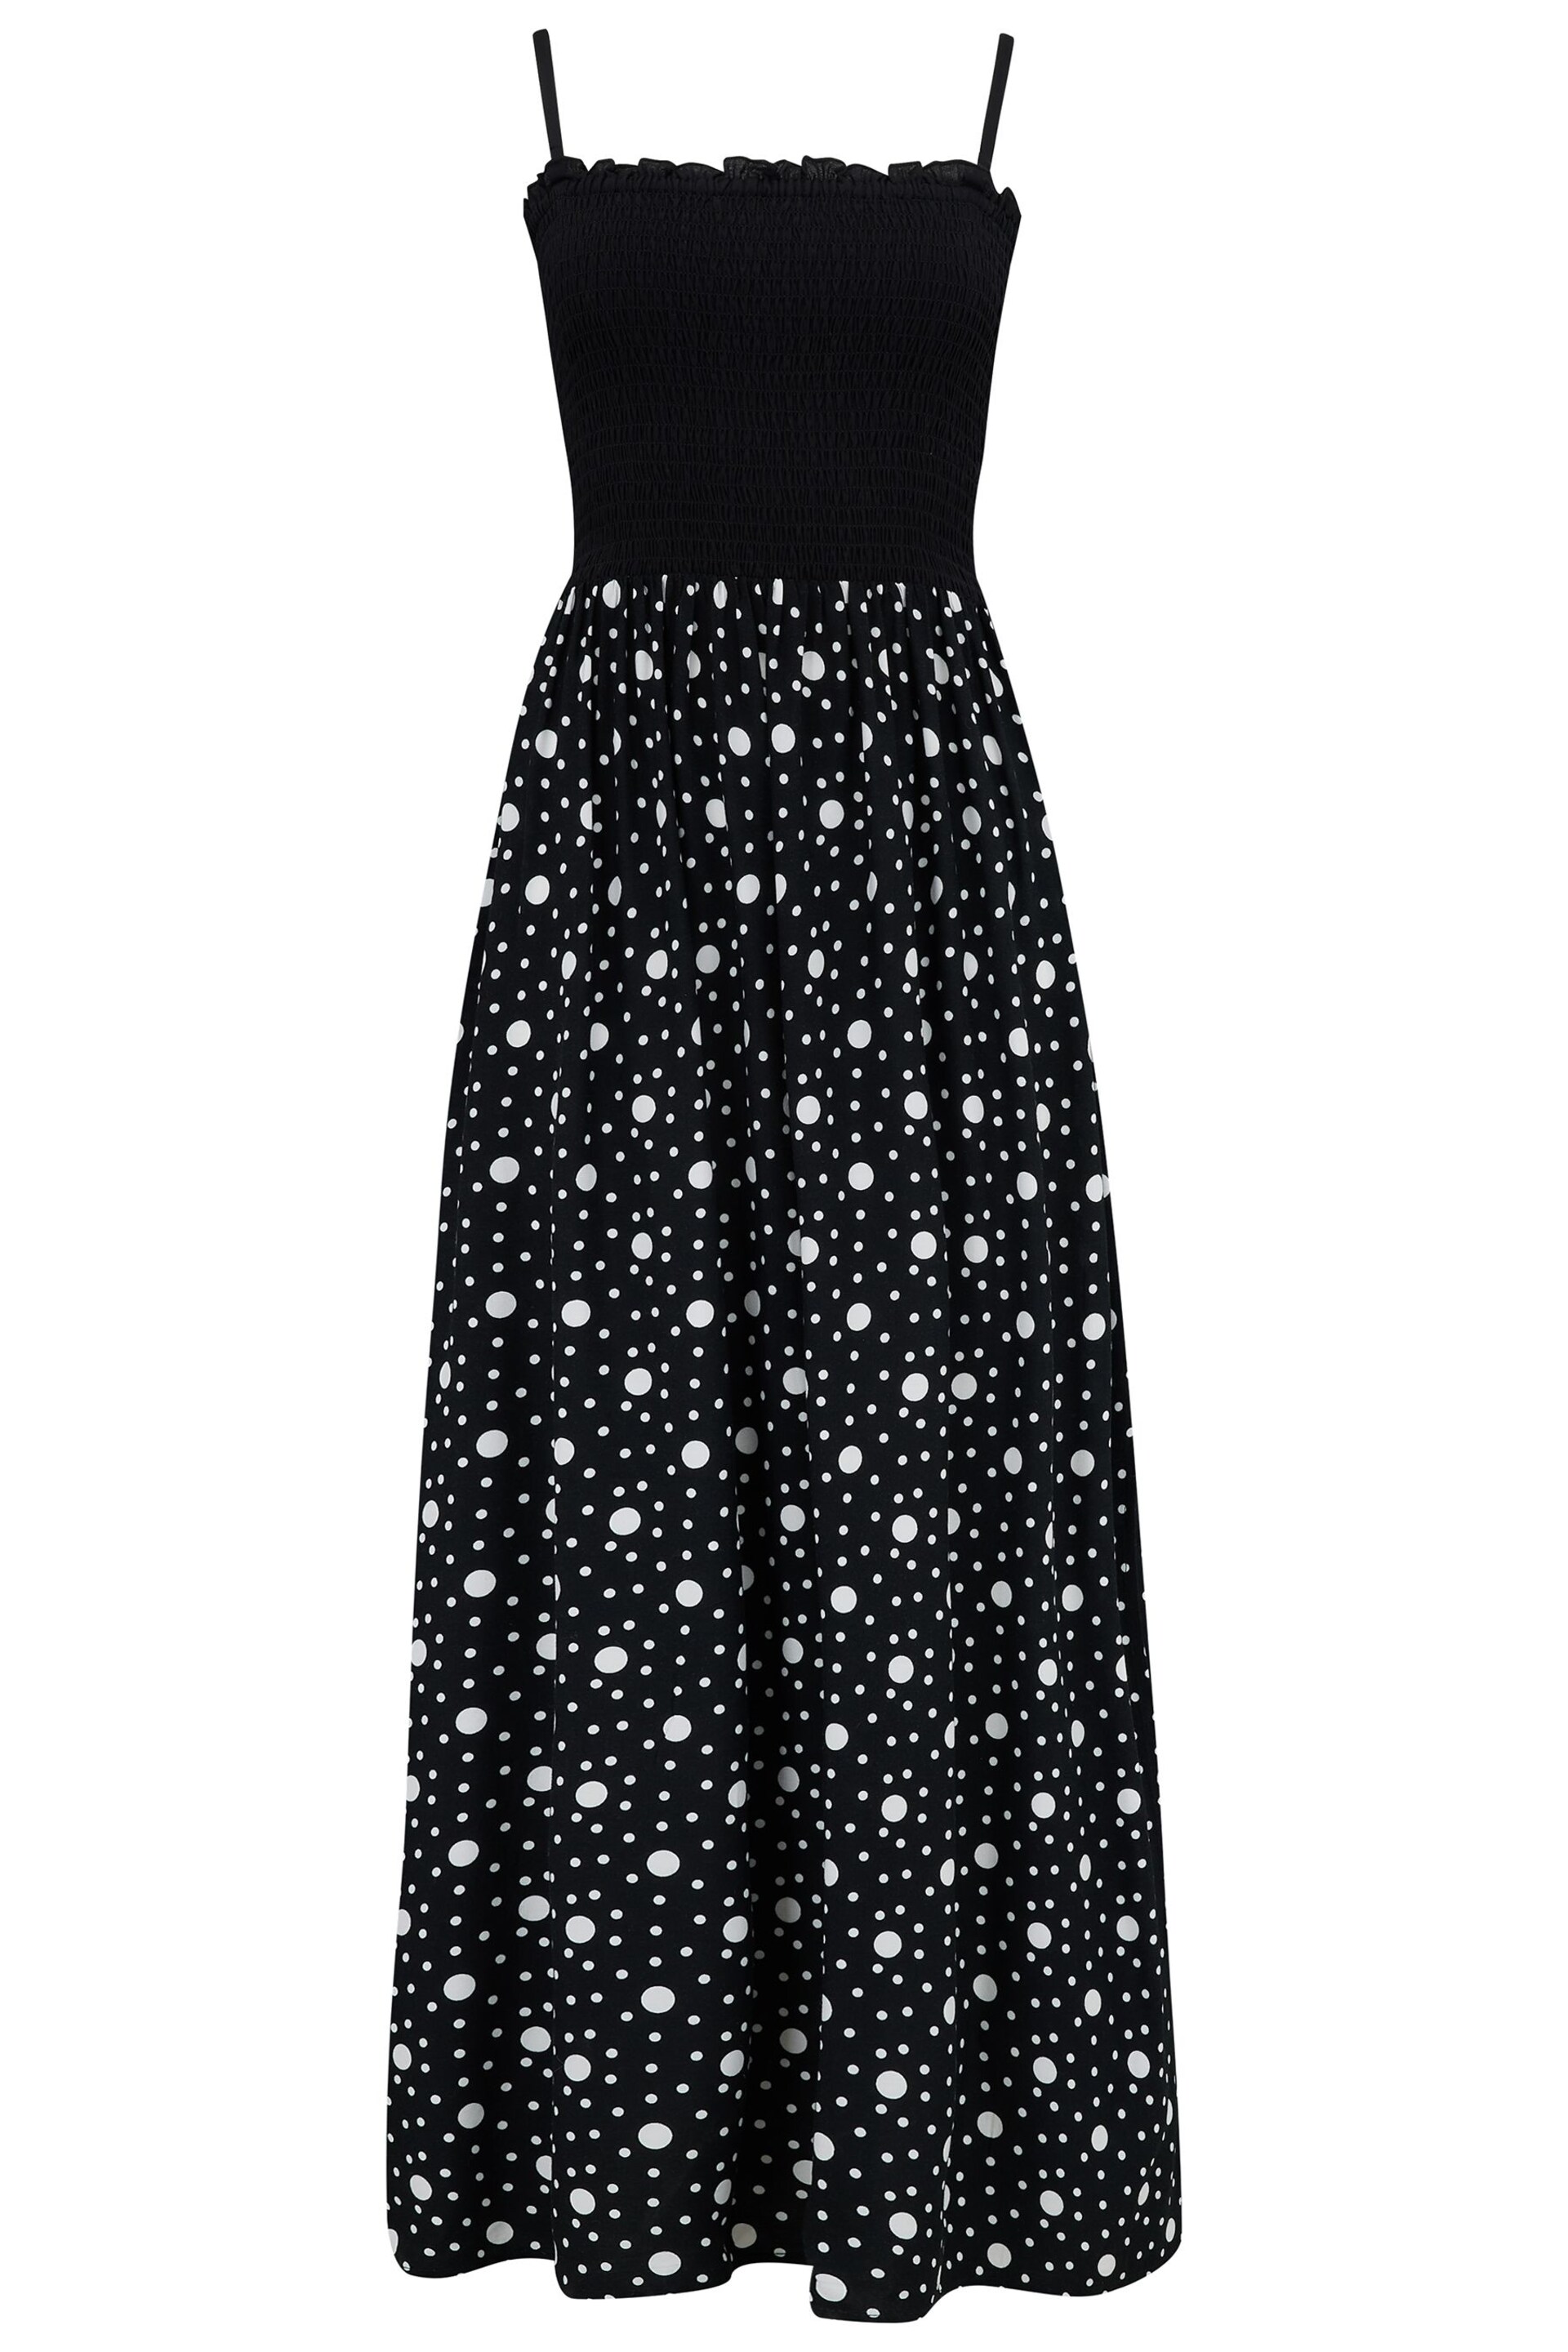 Pour Moi Black Polka Dot Removable Strap Dress - Image 4 of 5